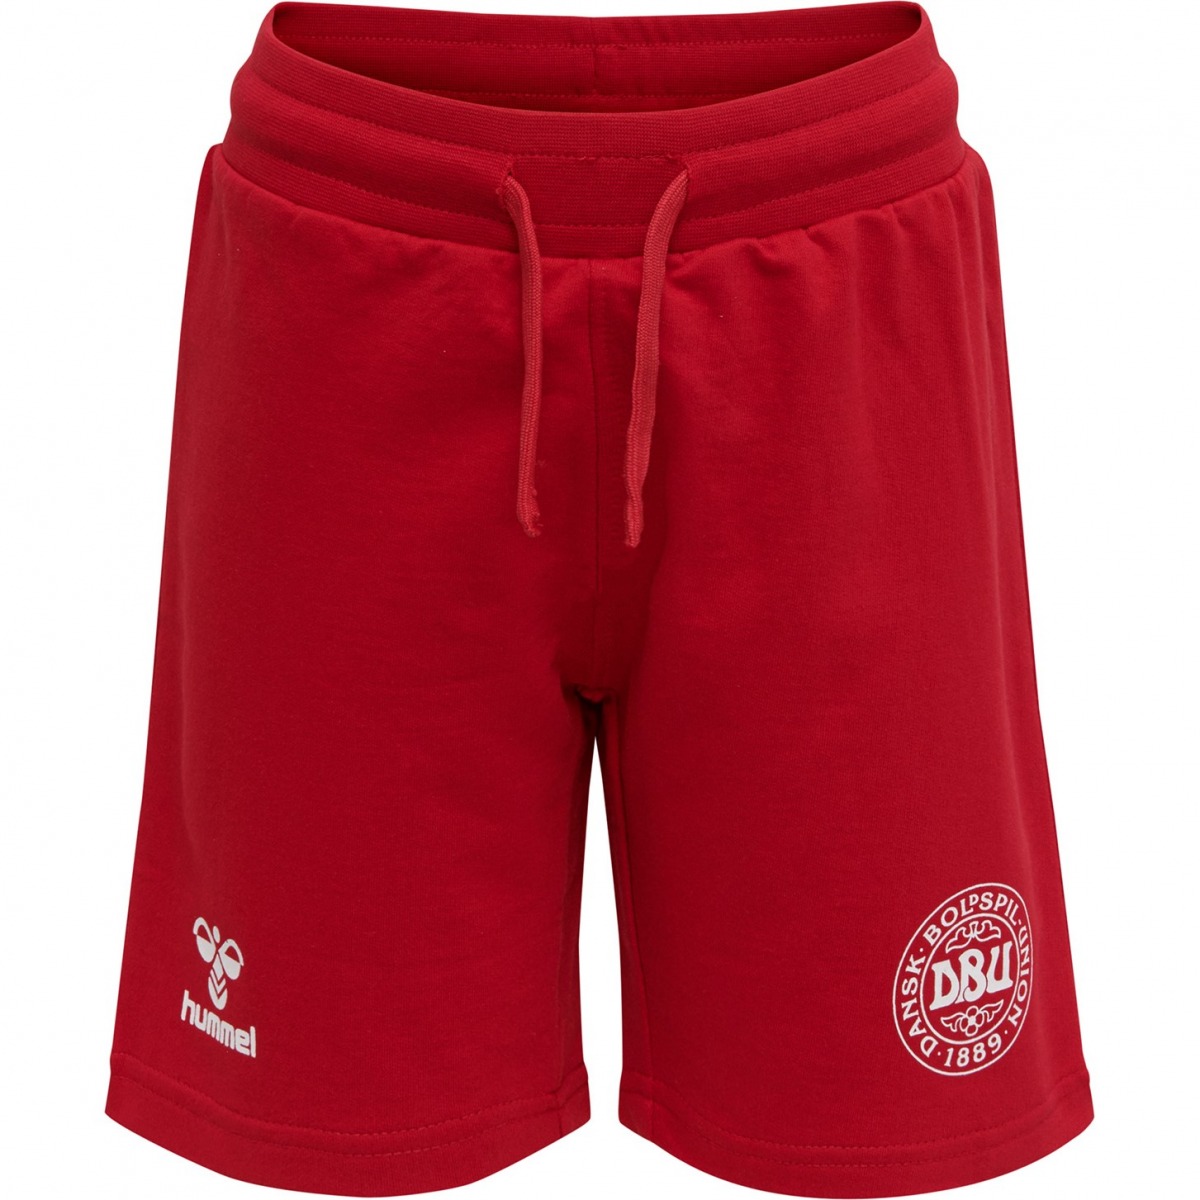 Hummel shorts - DBU - - Tango Red Rød | Køb her ⇒